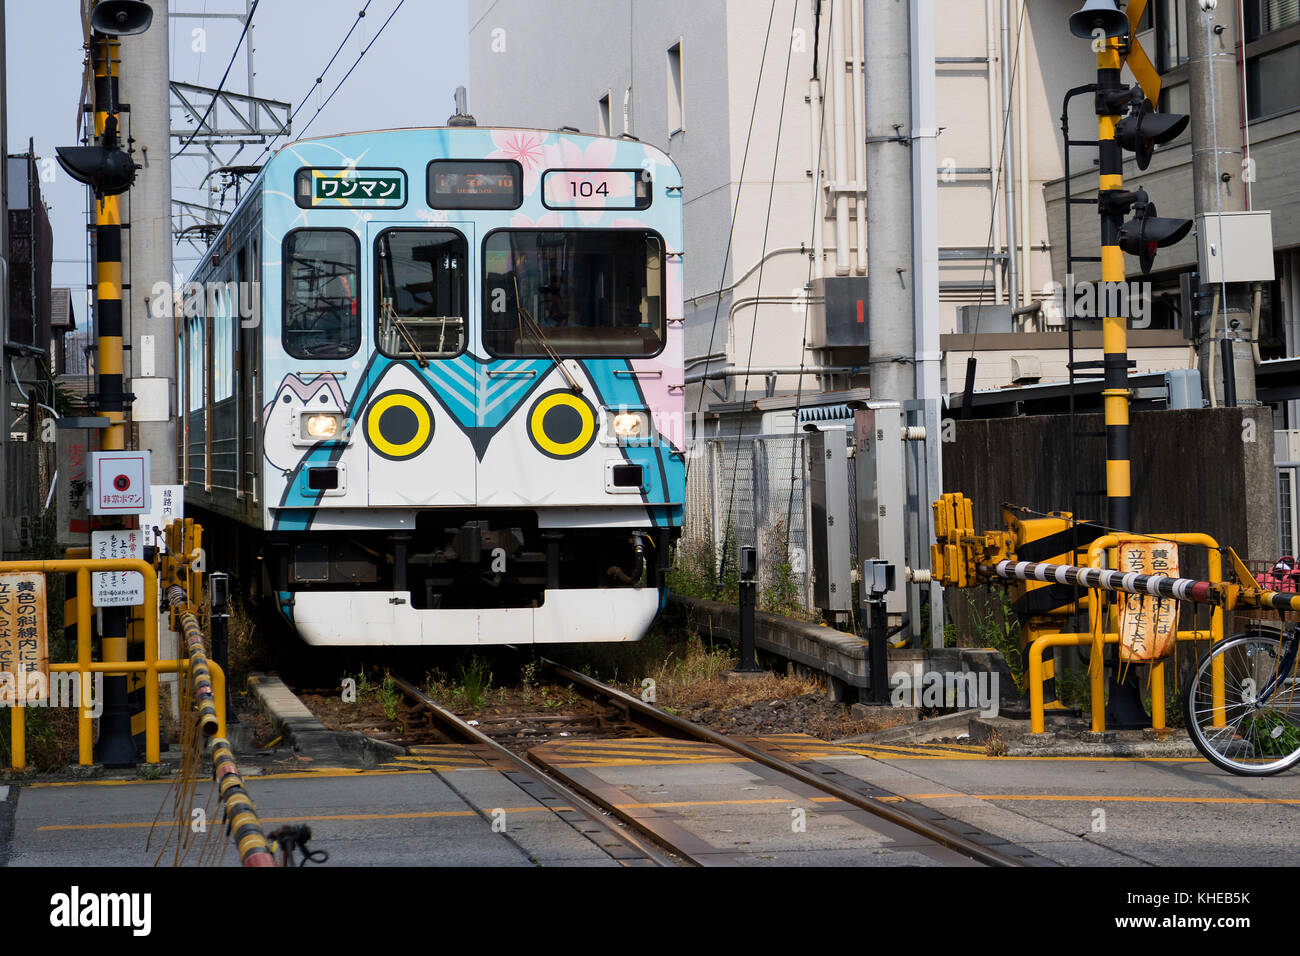 Iga Ueno - Japan, June 1, 2017: Kintetsu private railway, Iga Tetsudo, Iga Line, train  decorated with Ninja characters Stock Photo